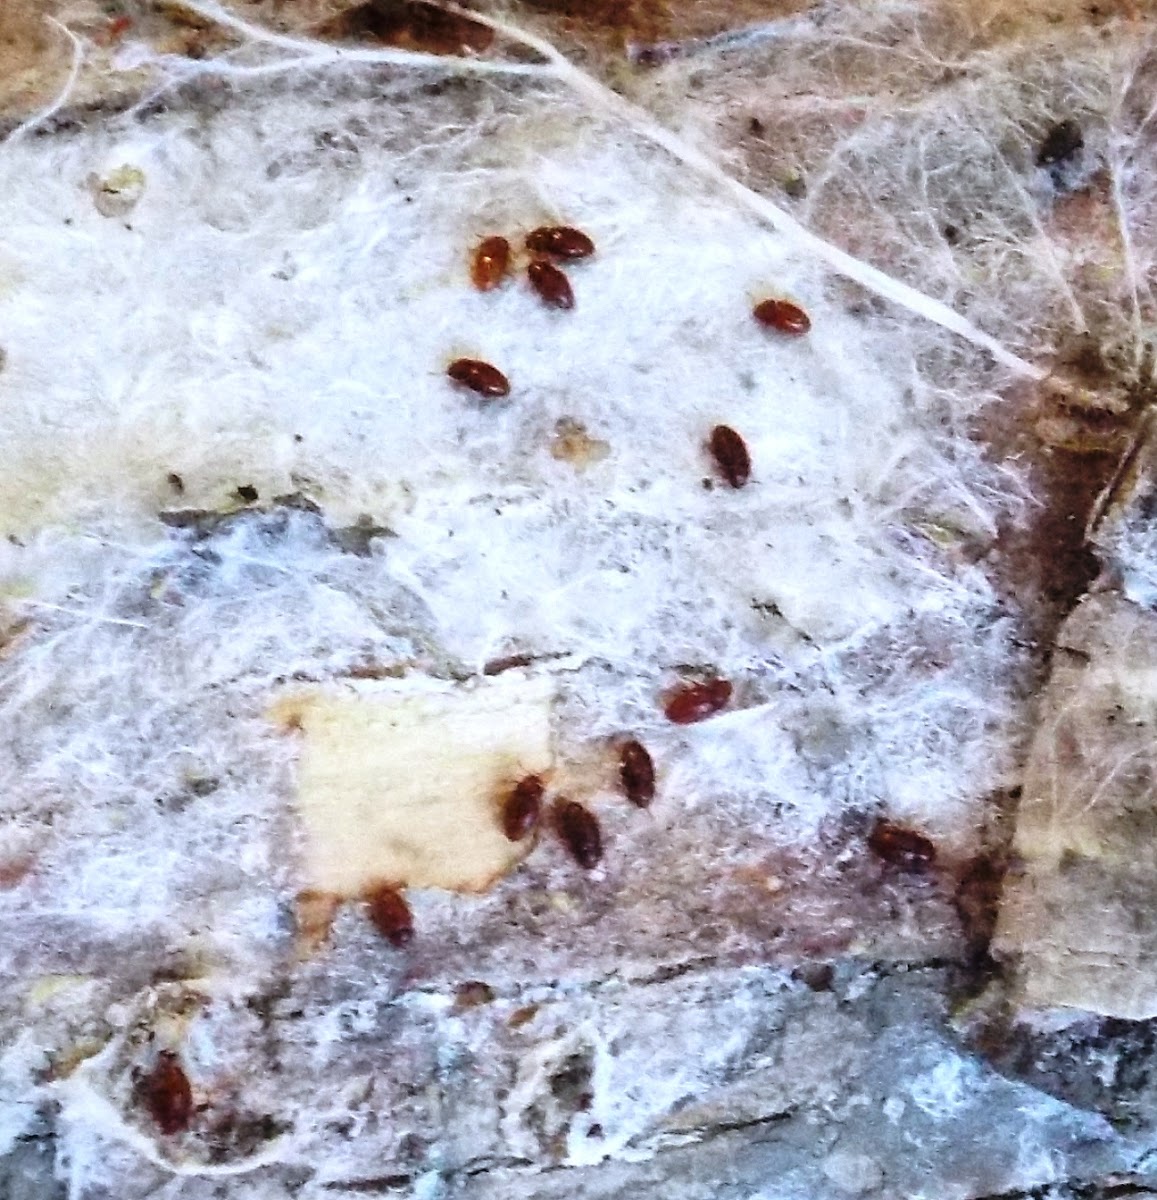 Round Fungus Beetles